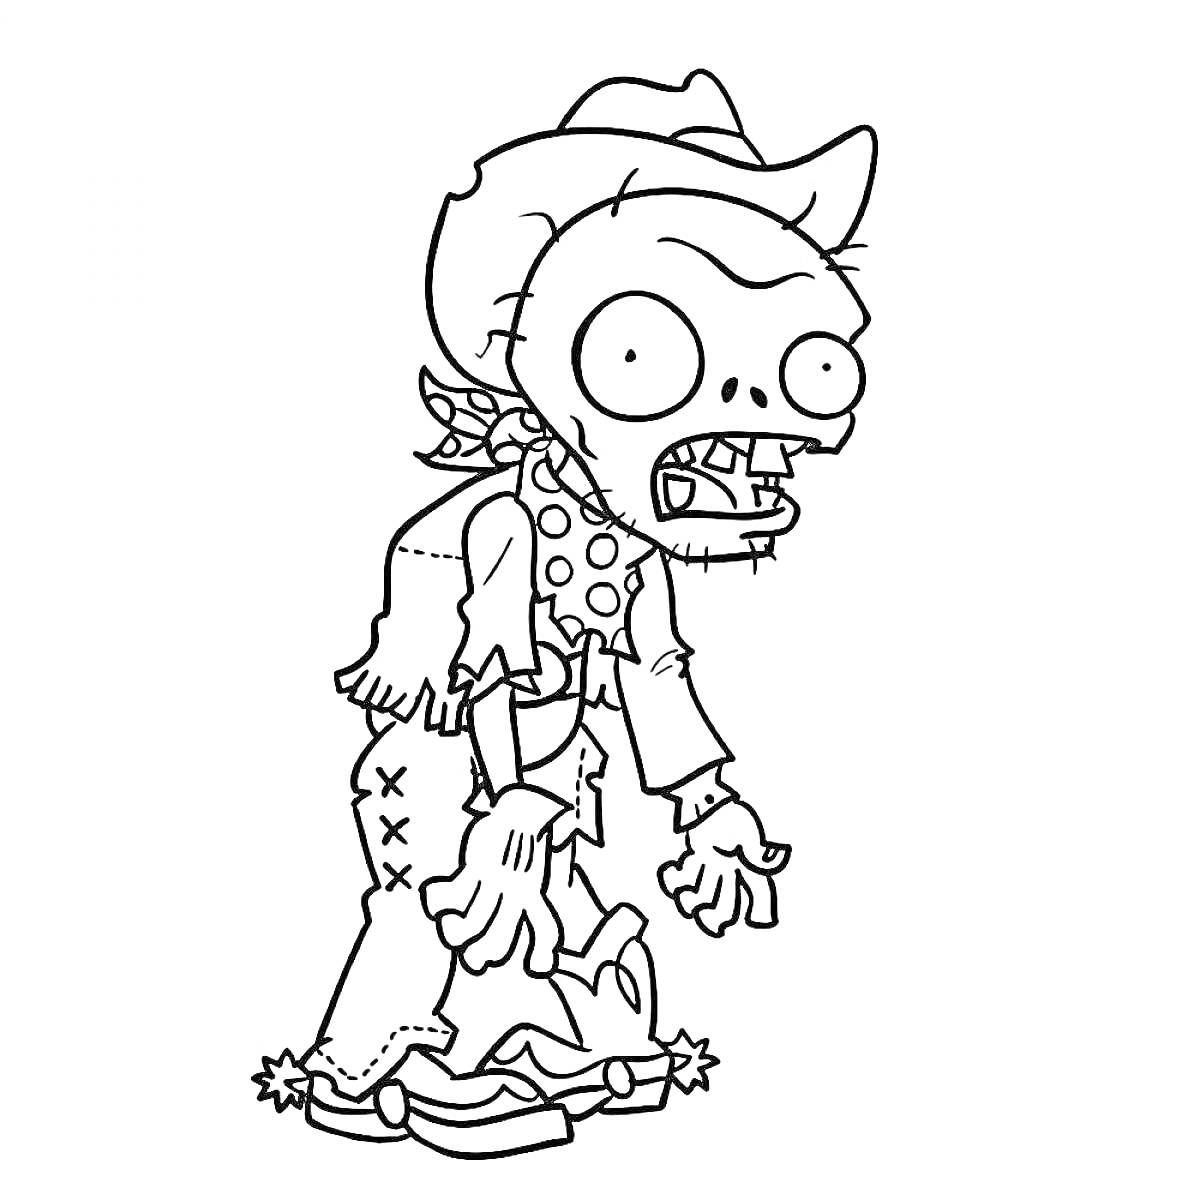 Раскраска Зомби в ковбойской шляпе с платком и заплатками на одежде